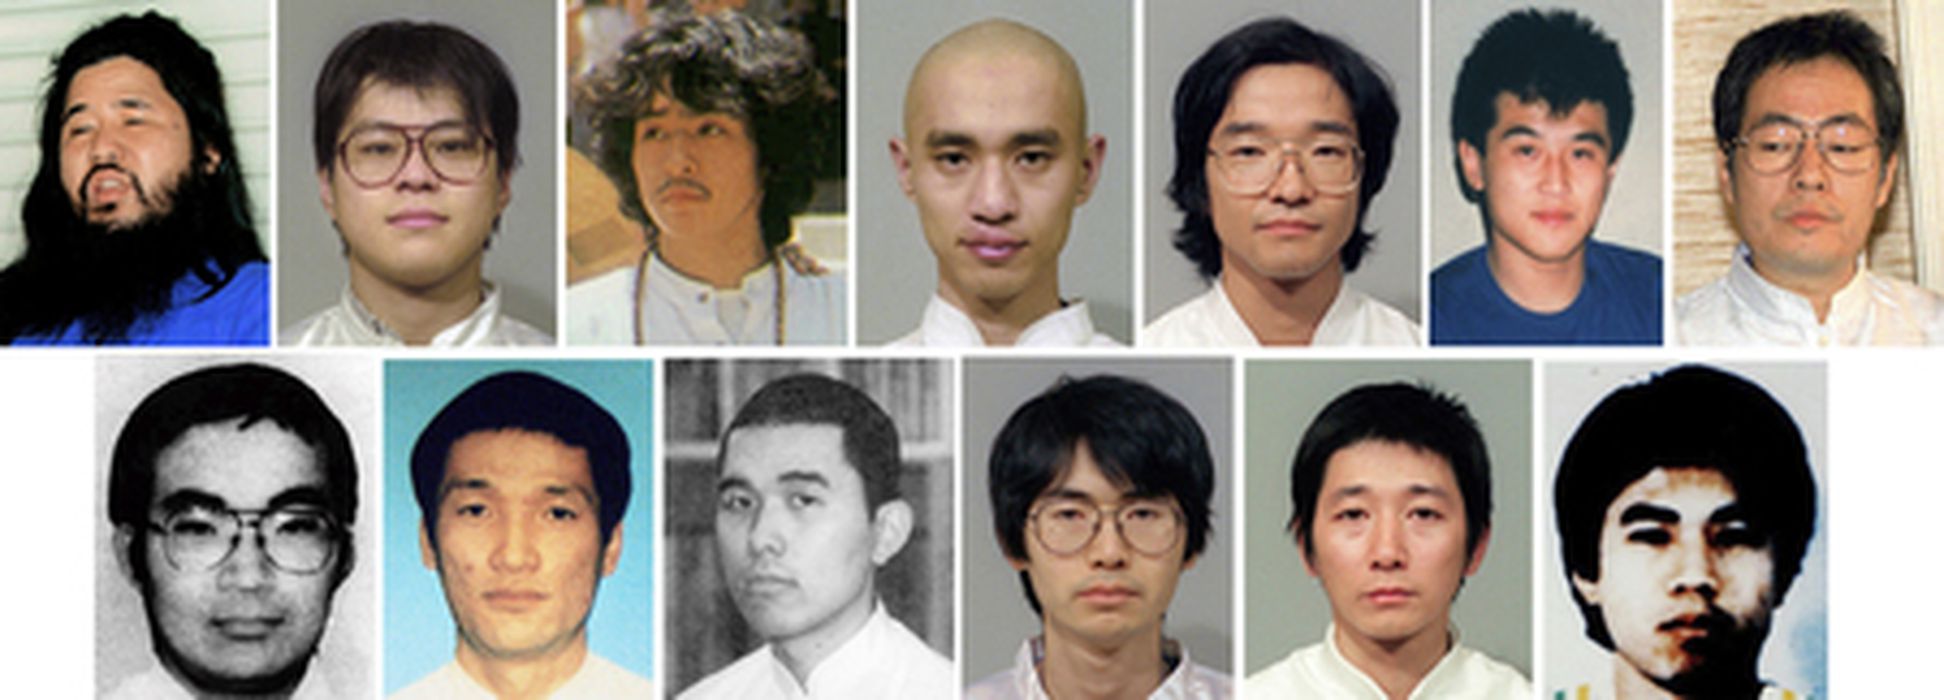 Члены «Аум Синрике», приговоренные к смертной казни за теракт в токийском метро. Фото TASS / Scanpix / Leta